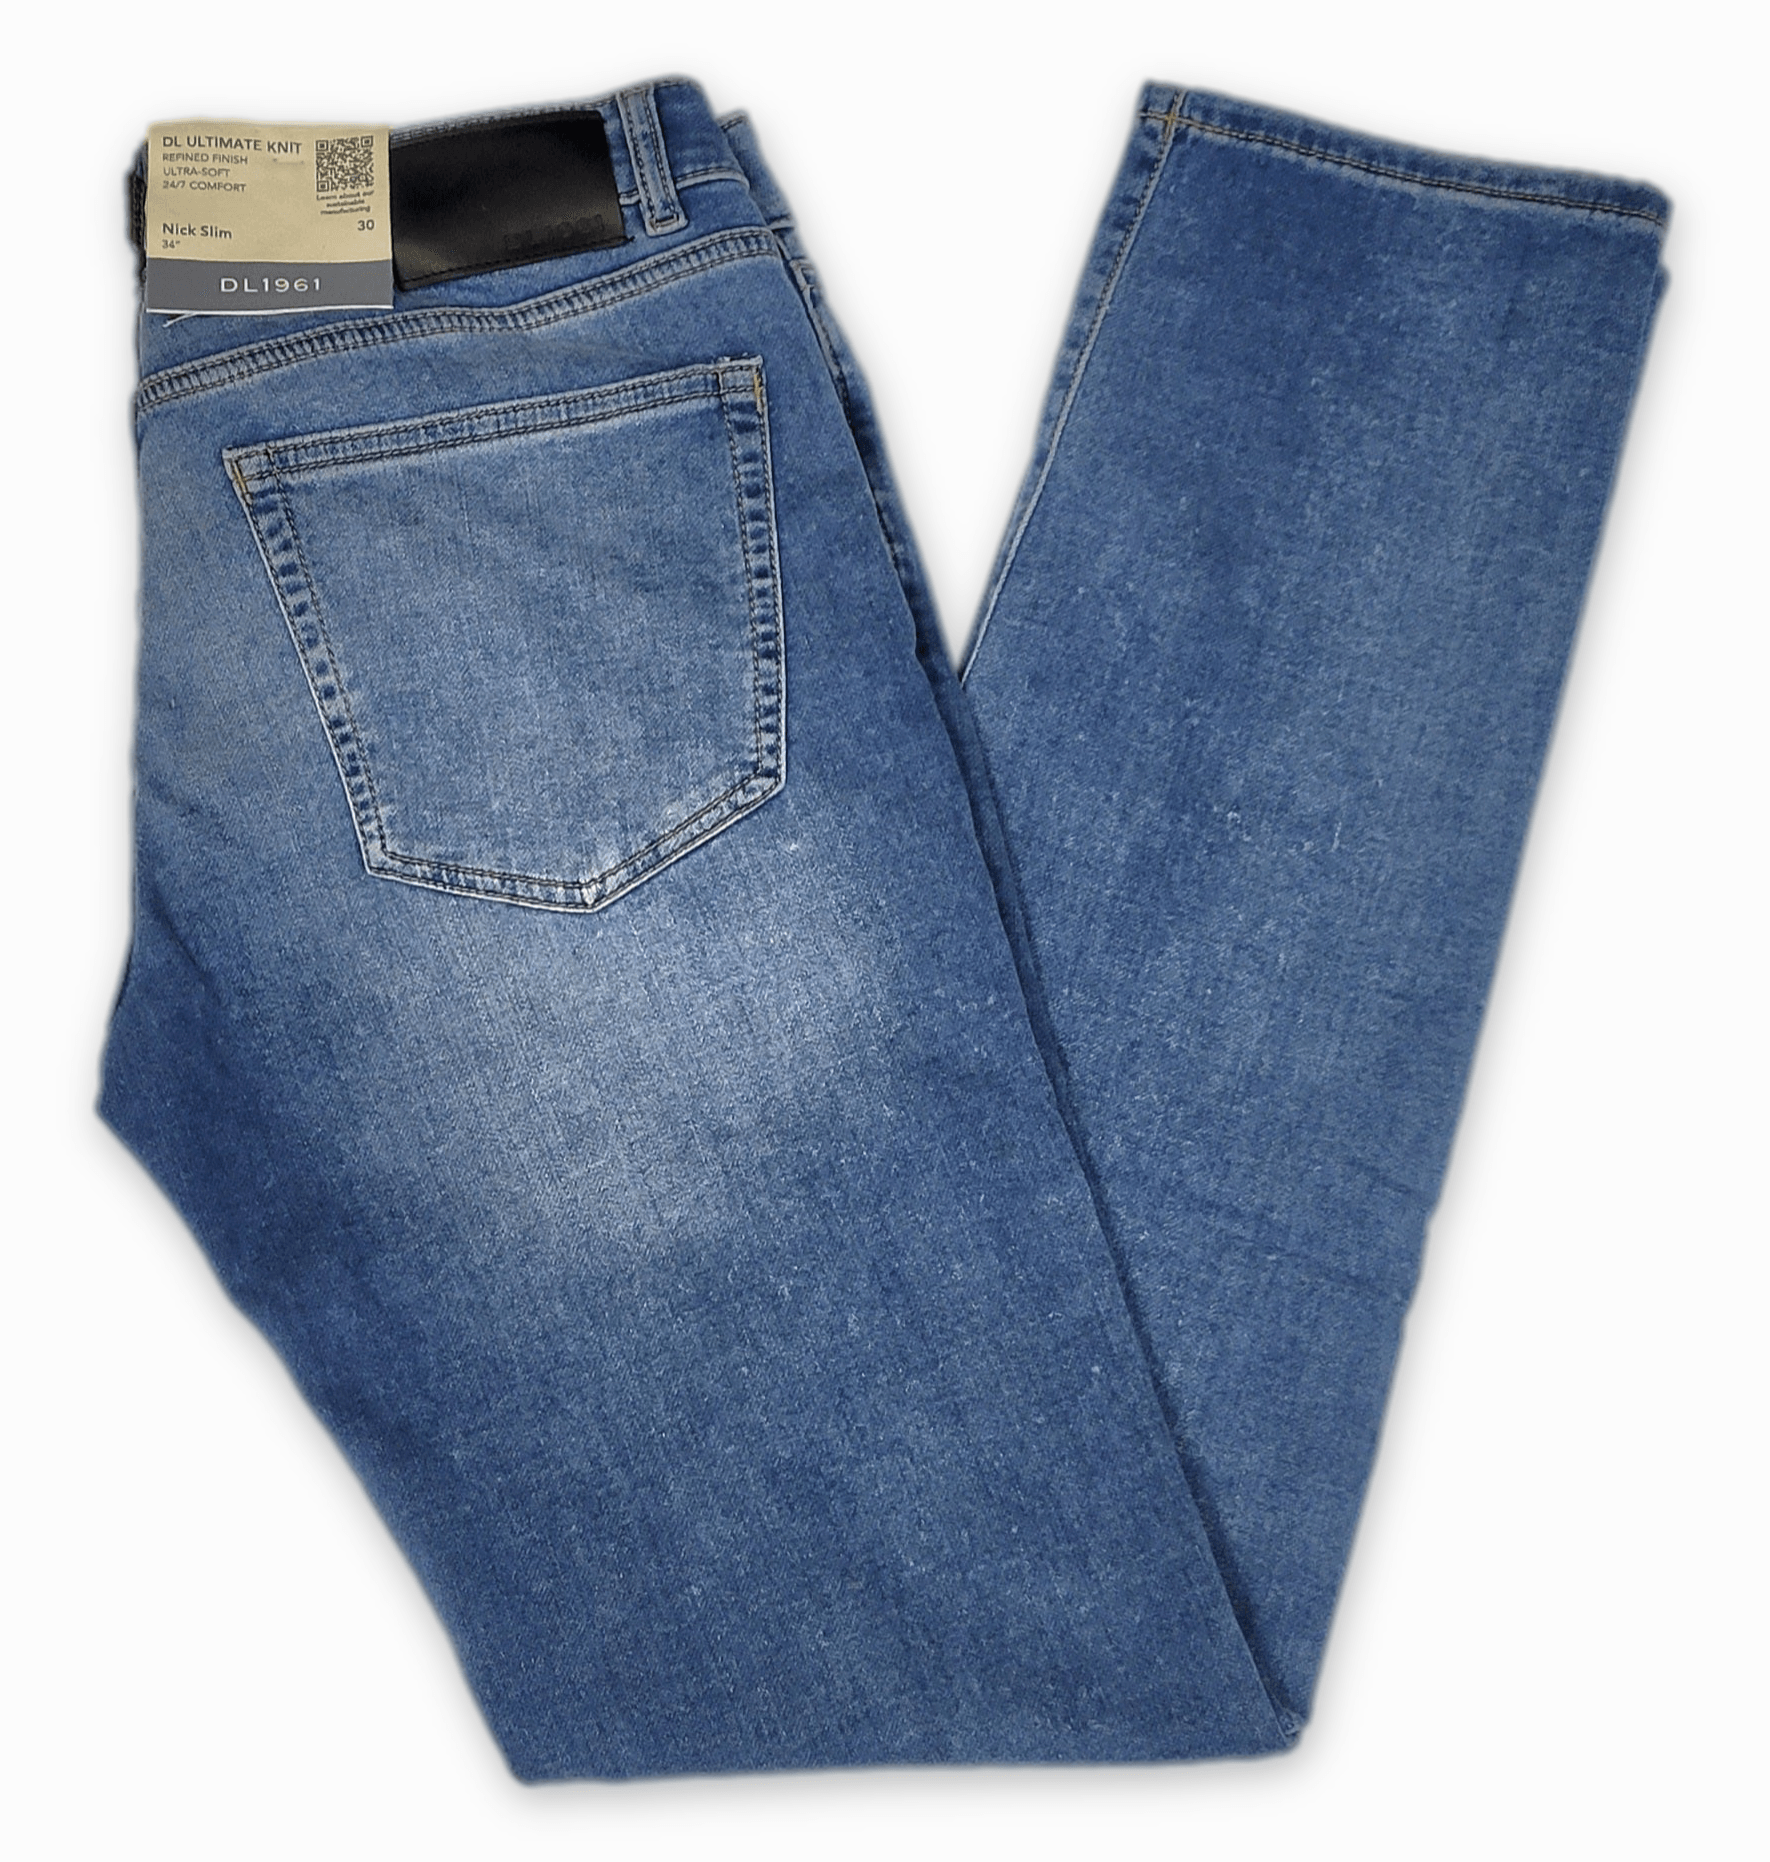 Laflamme- Jeans de twill bluejeans - DL1961